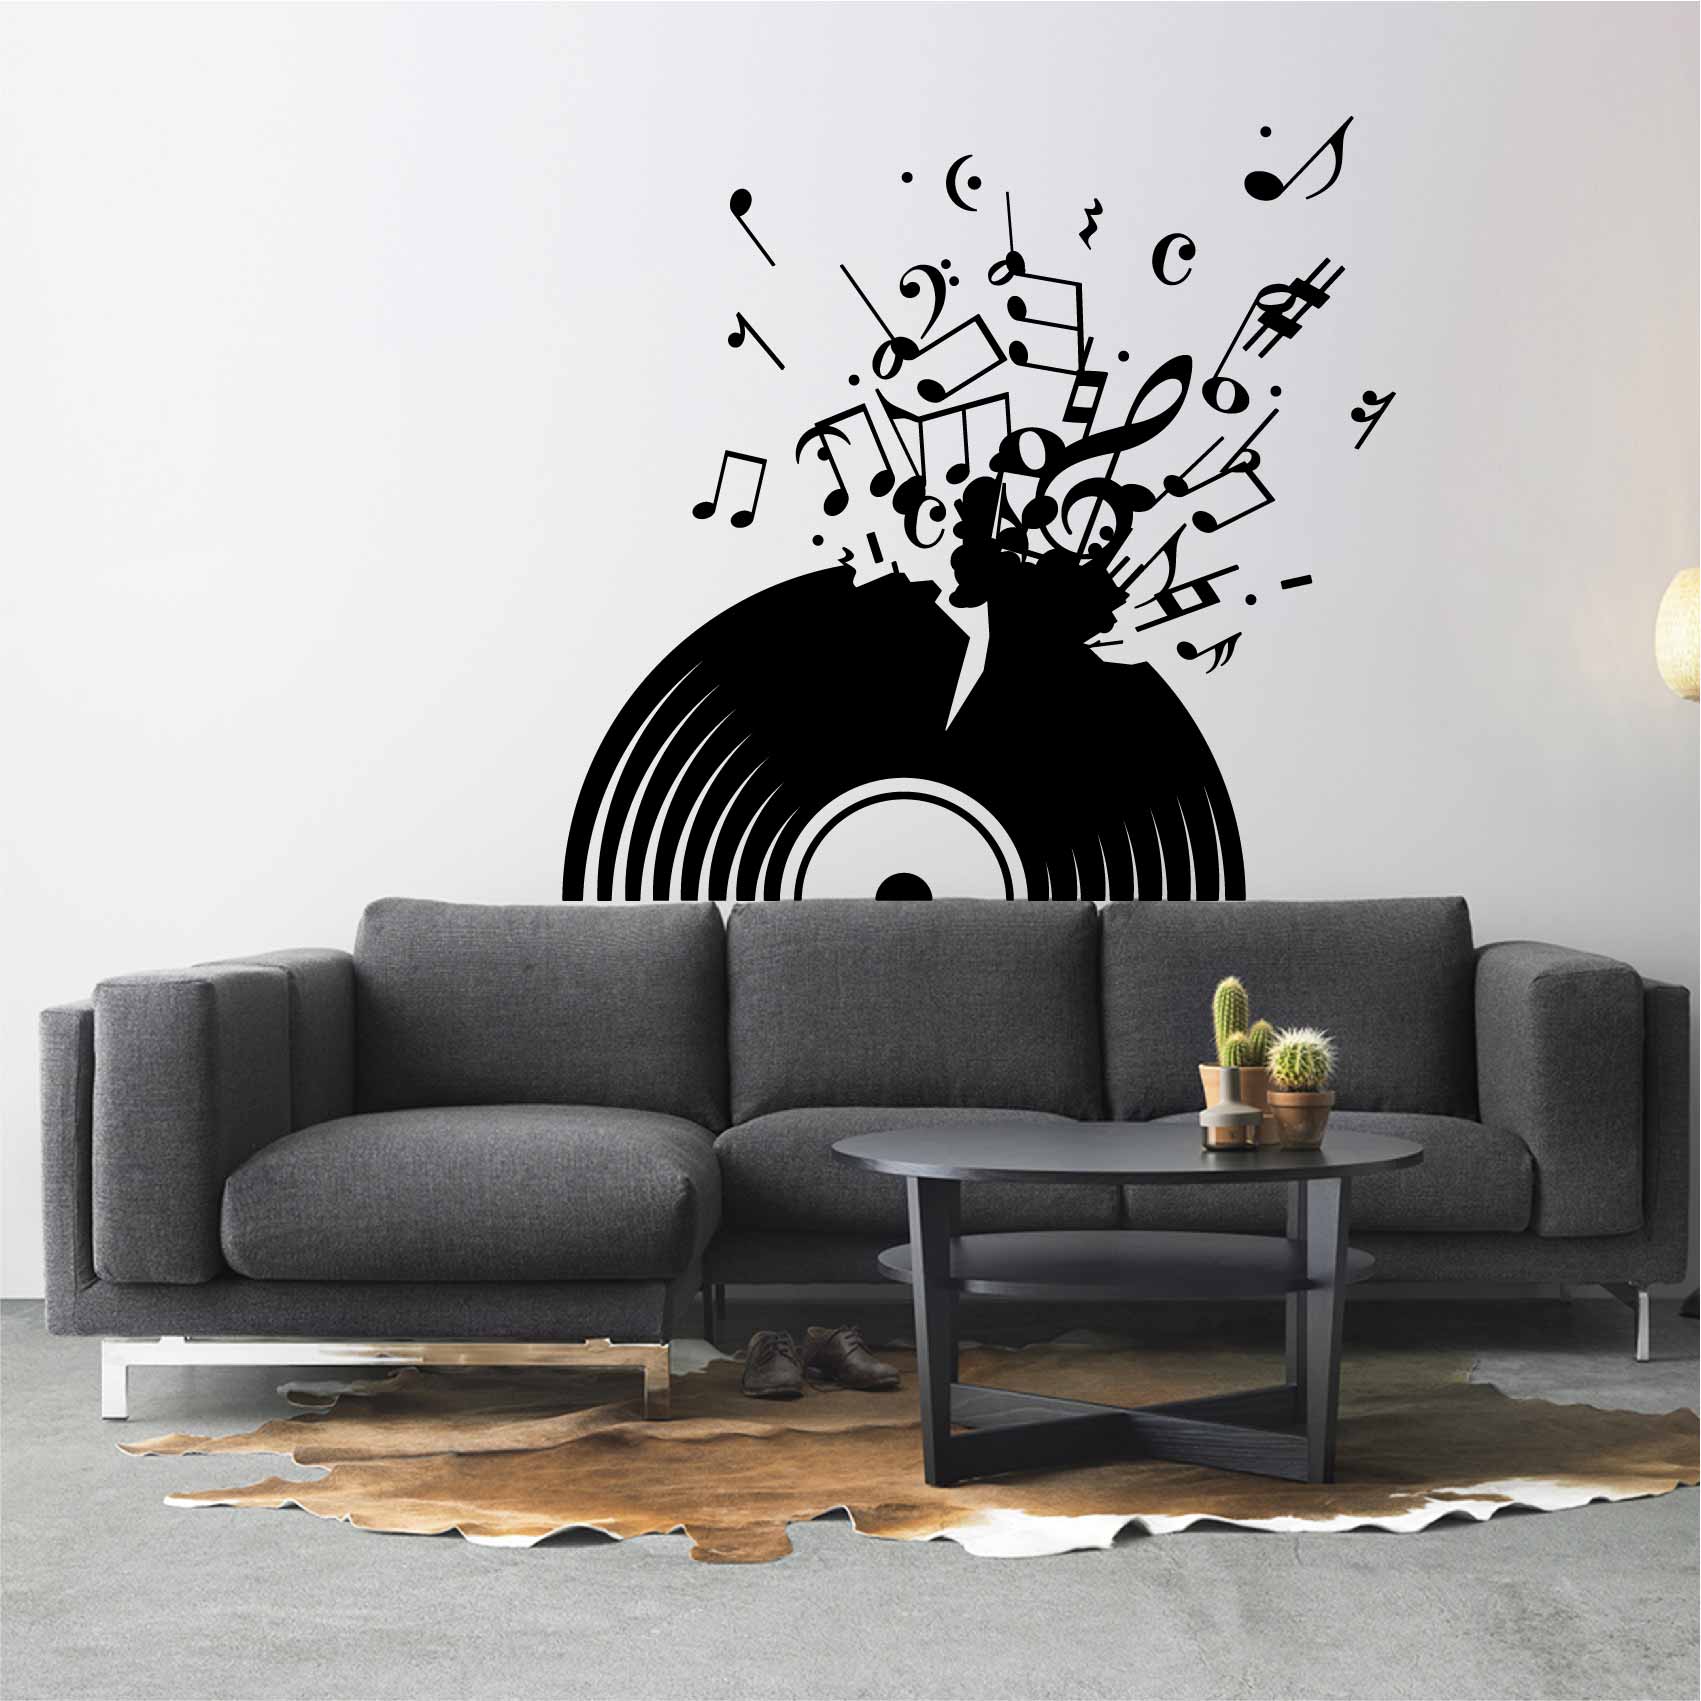 stickers-vinyle-qui-explose-ref66musique-stickers-muraux-musique-autocollant-deco-salon-chambre-music-sticker-mural-musique